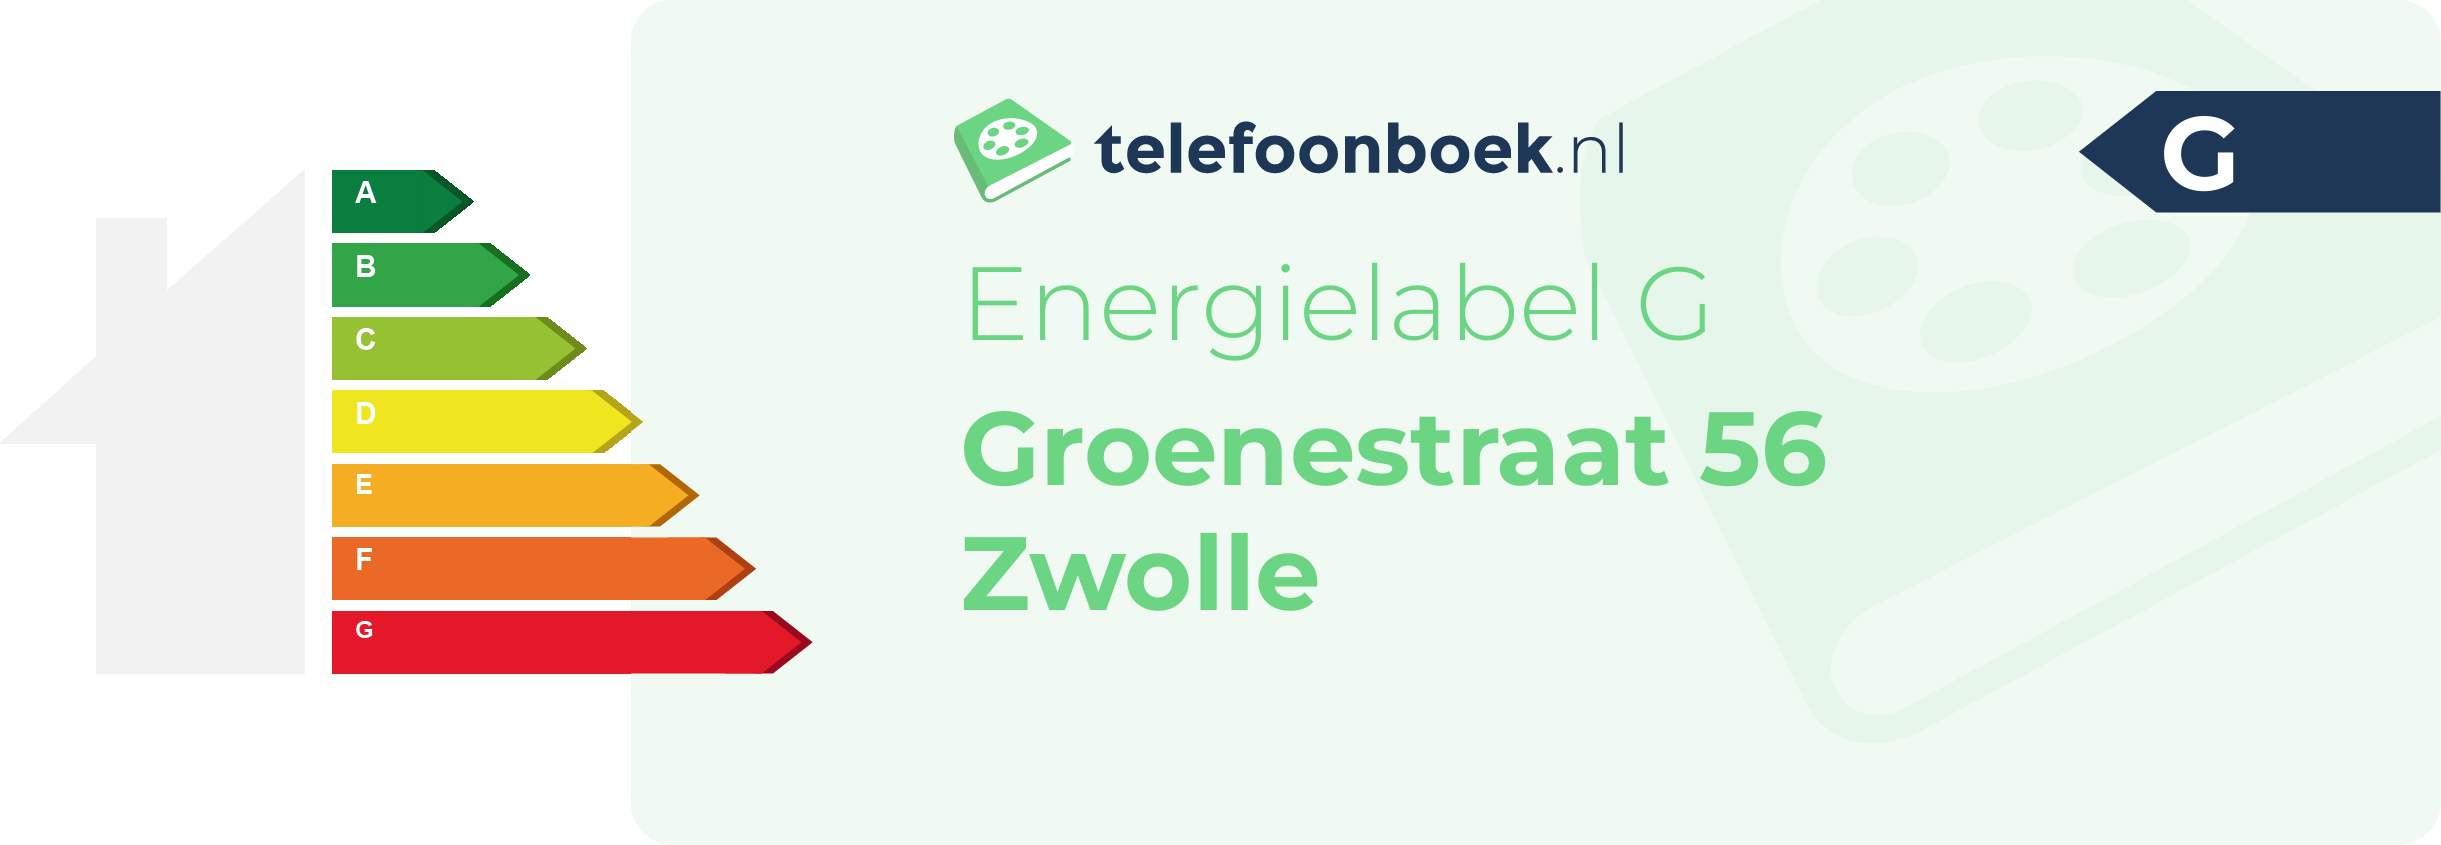 Energielabel Groenestraat 56 Zwolle